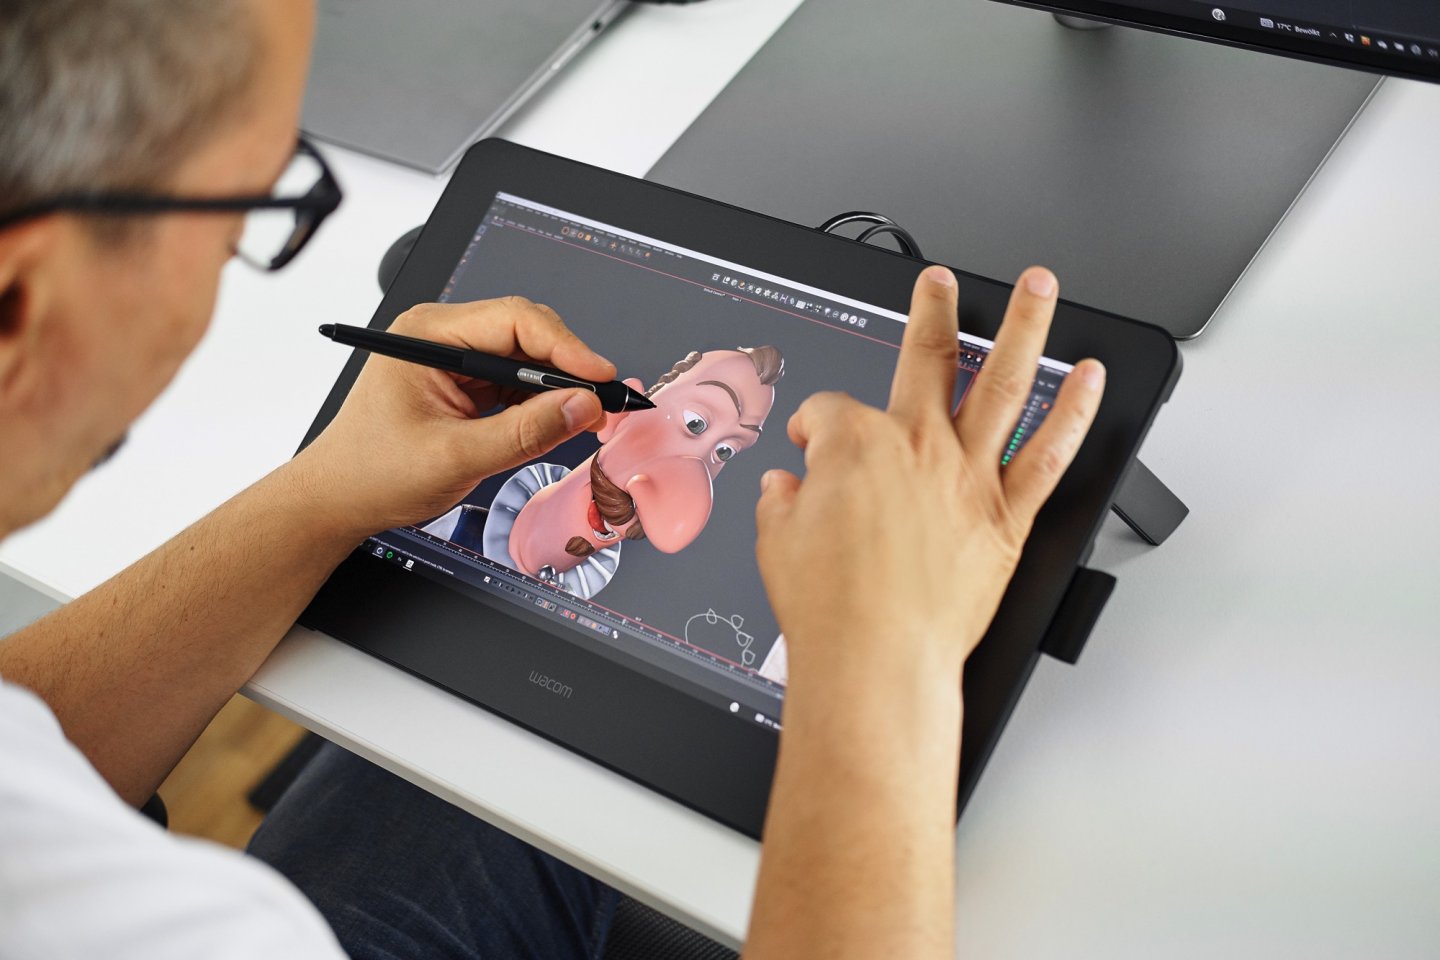 新款「Wacom Cintiq Pro 16」觸控繪圖螢幕具備 4K 解析度，讓數位藝術家和設計師揮灑創意